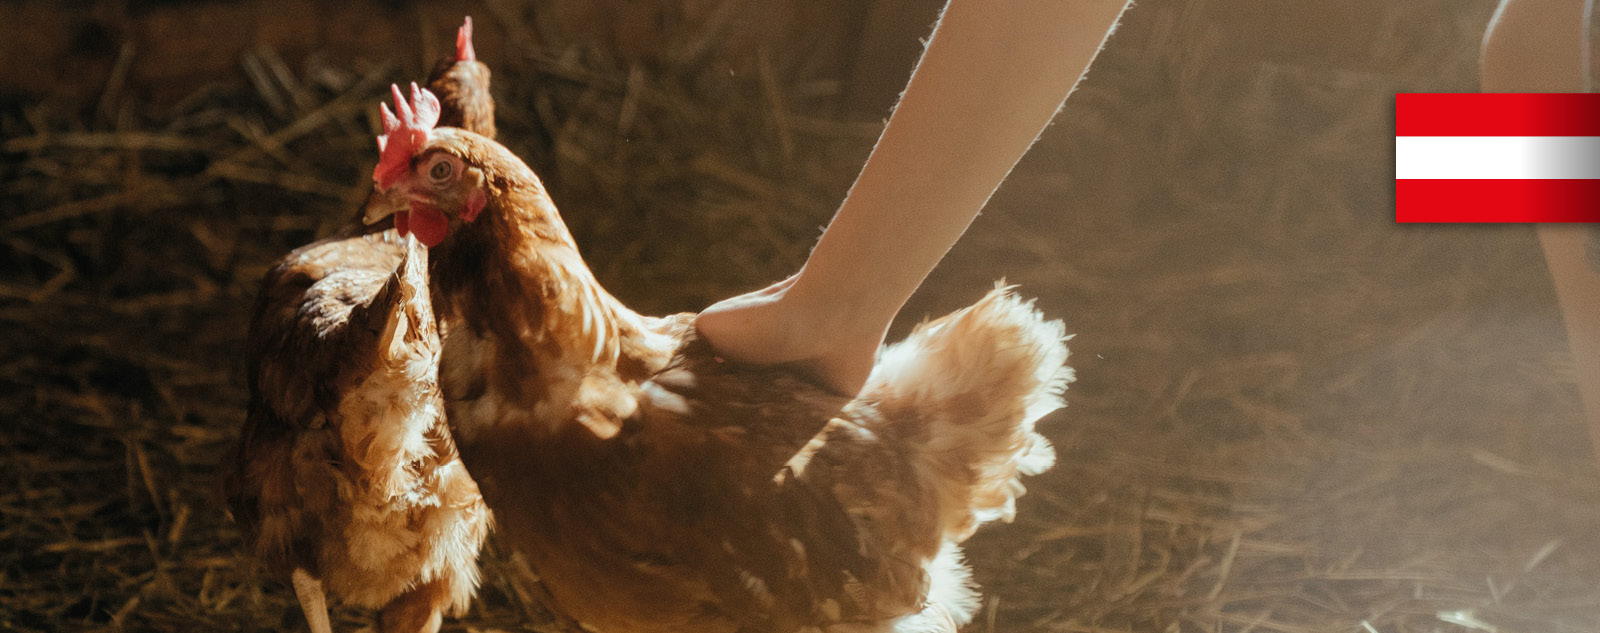 Essen am Arbeitsplatz - frisch aus der Natur: Huhn im Stall